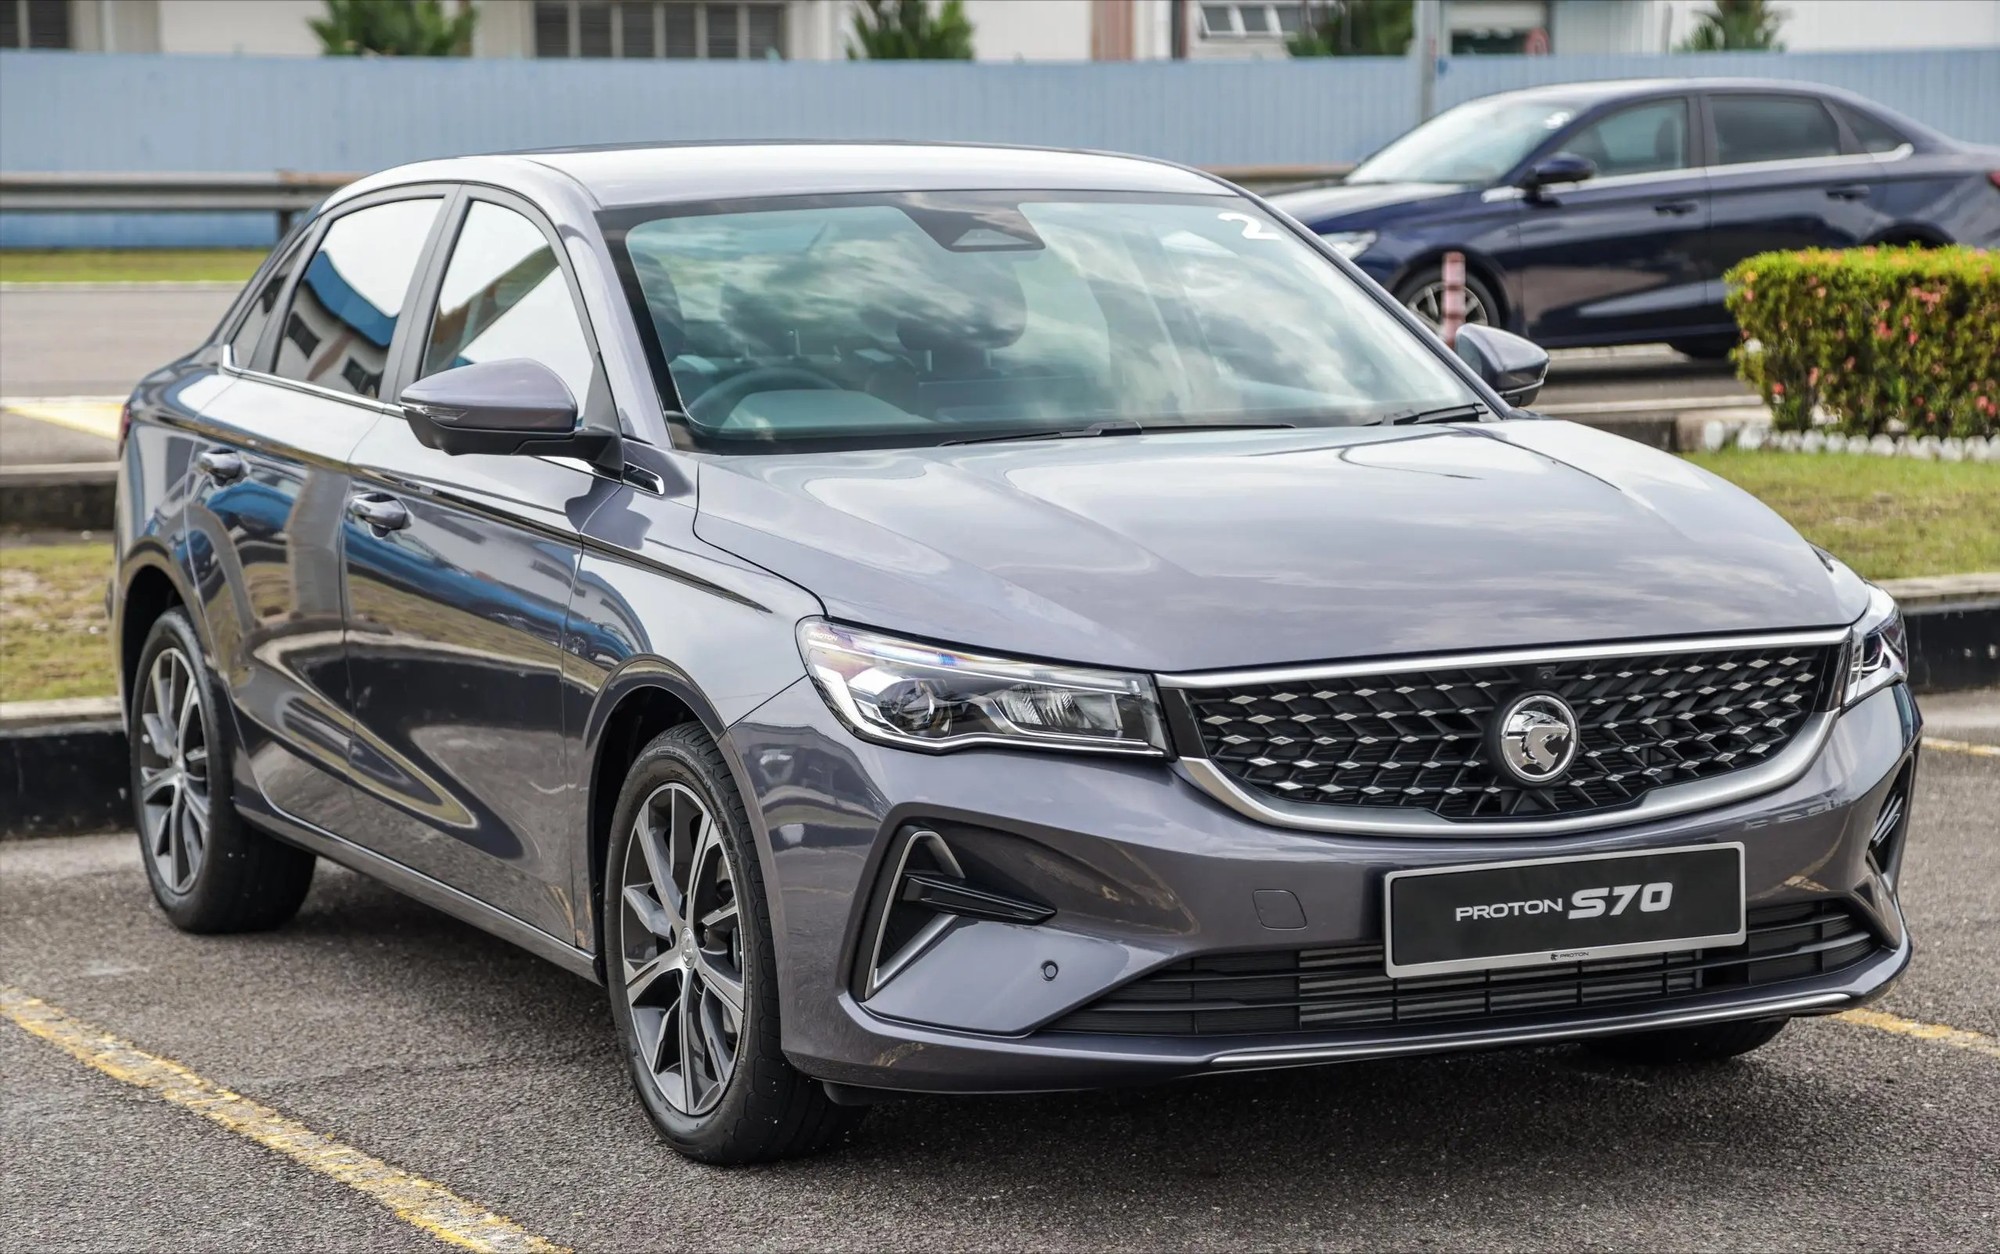 马来西亚当地汽车制造商宝腾最近公布了上个月的销售数据